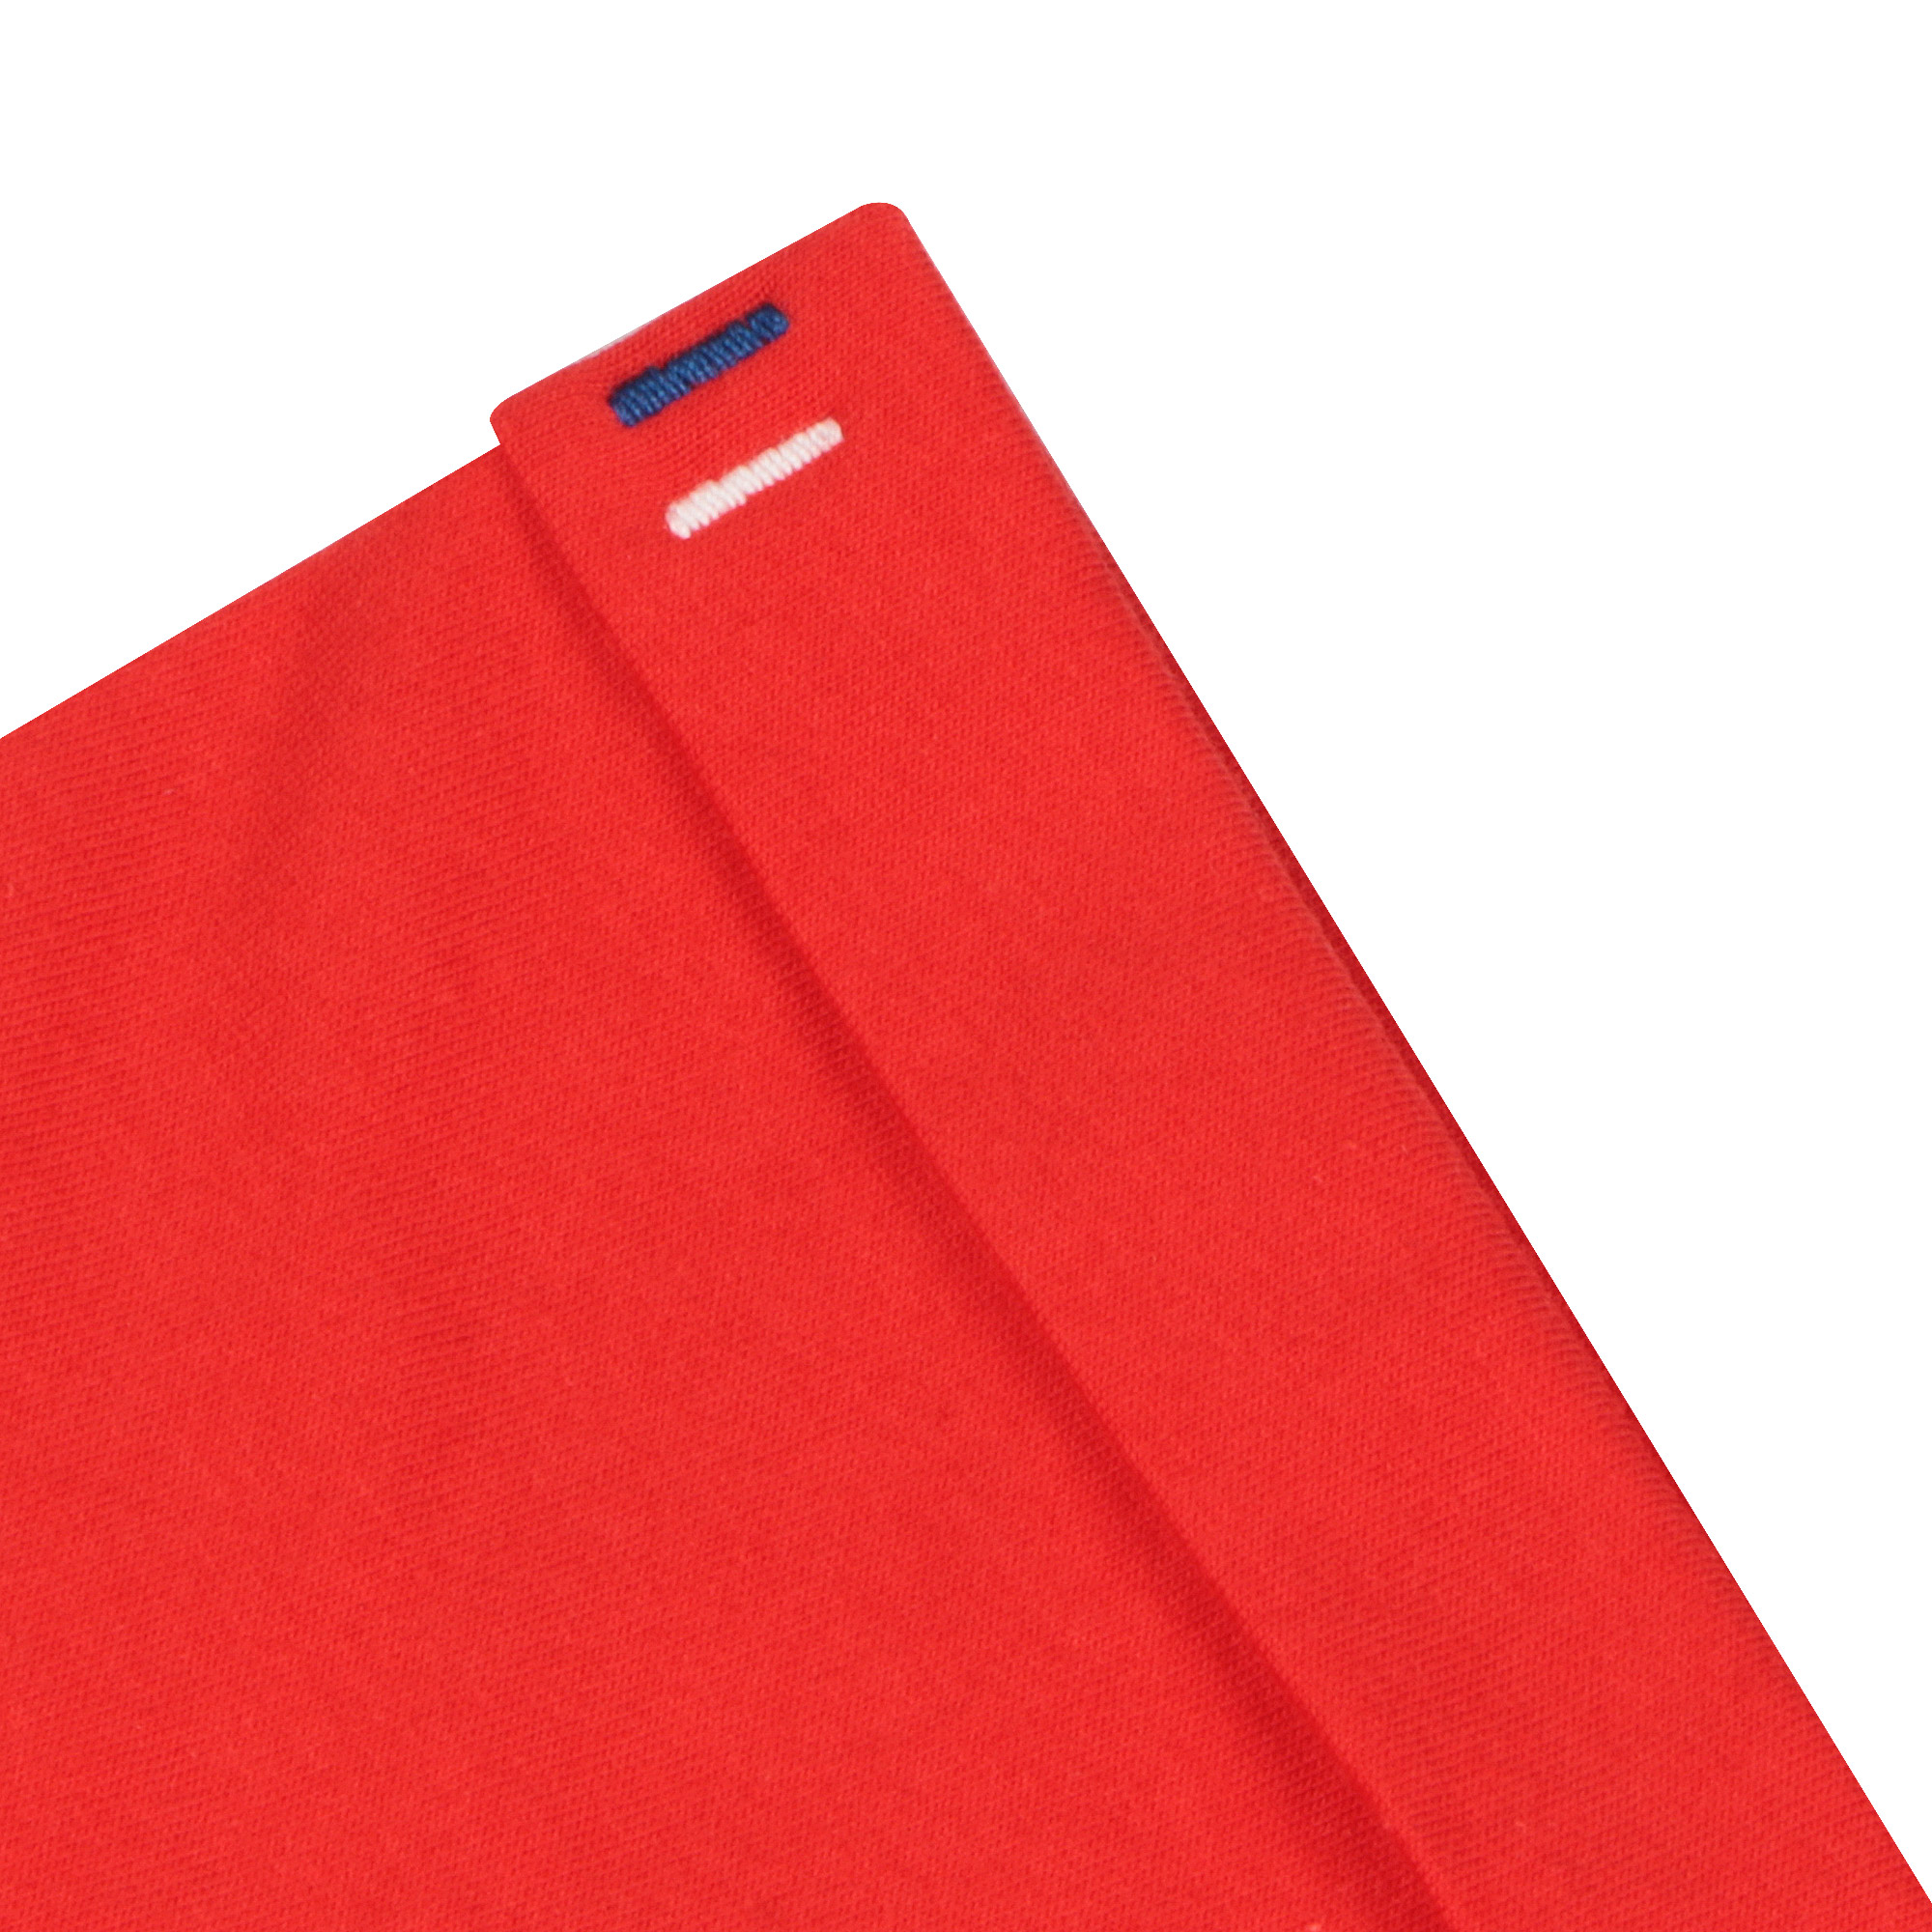 Мужская футболка Pantelemone MF-898 красная 54, цвет красный, размер 54 - фото 5